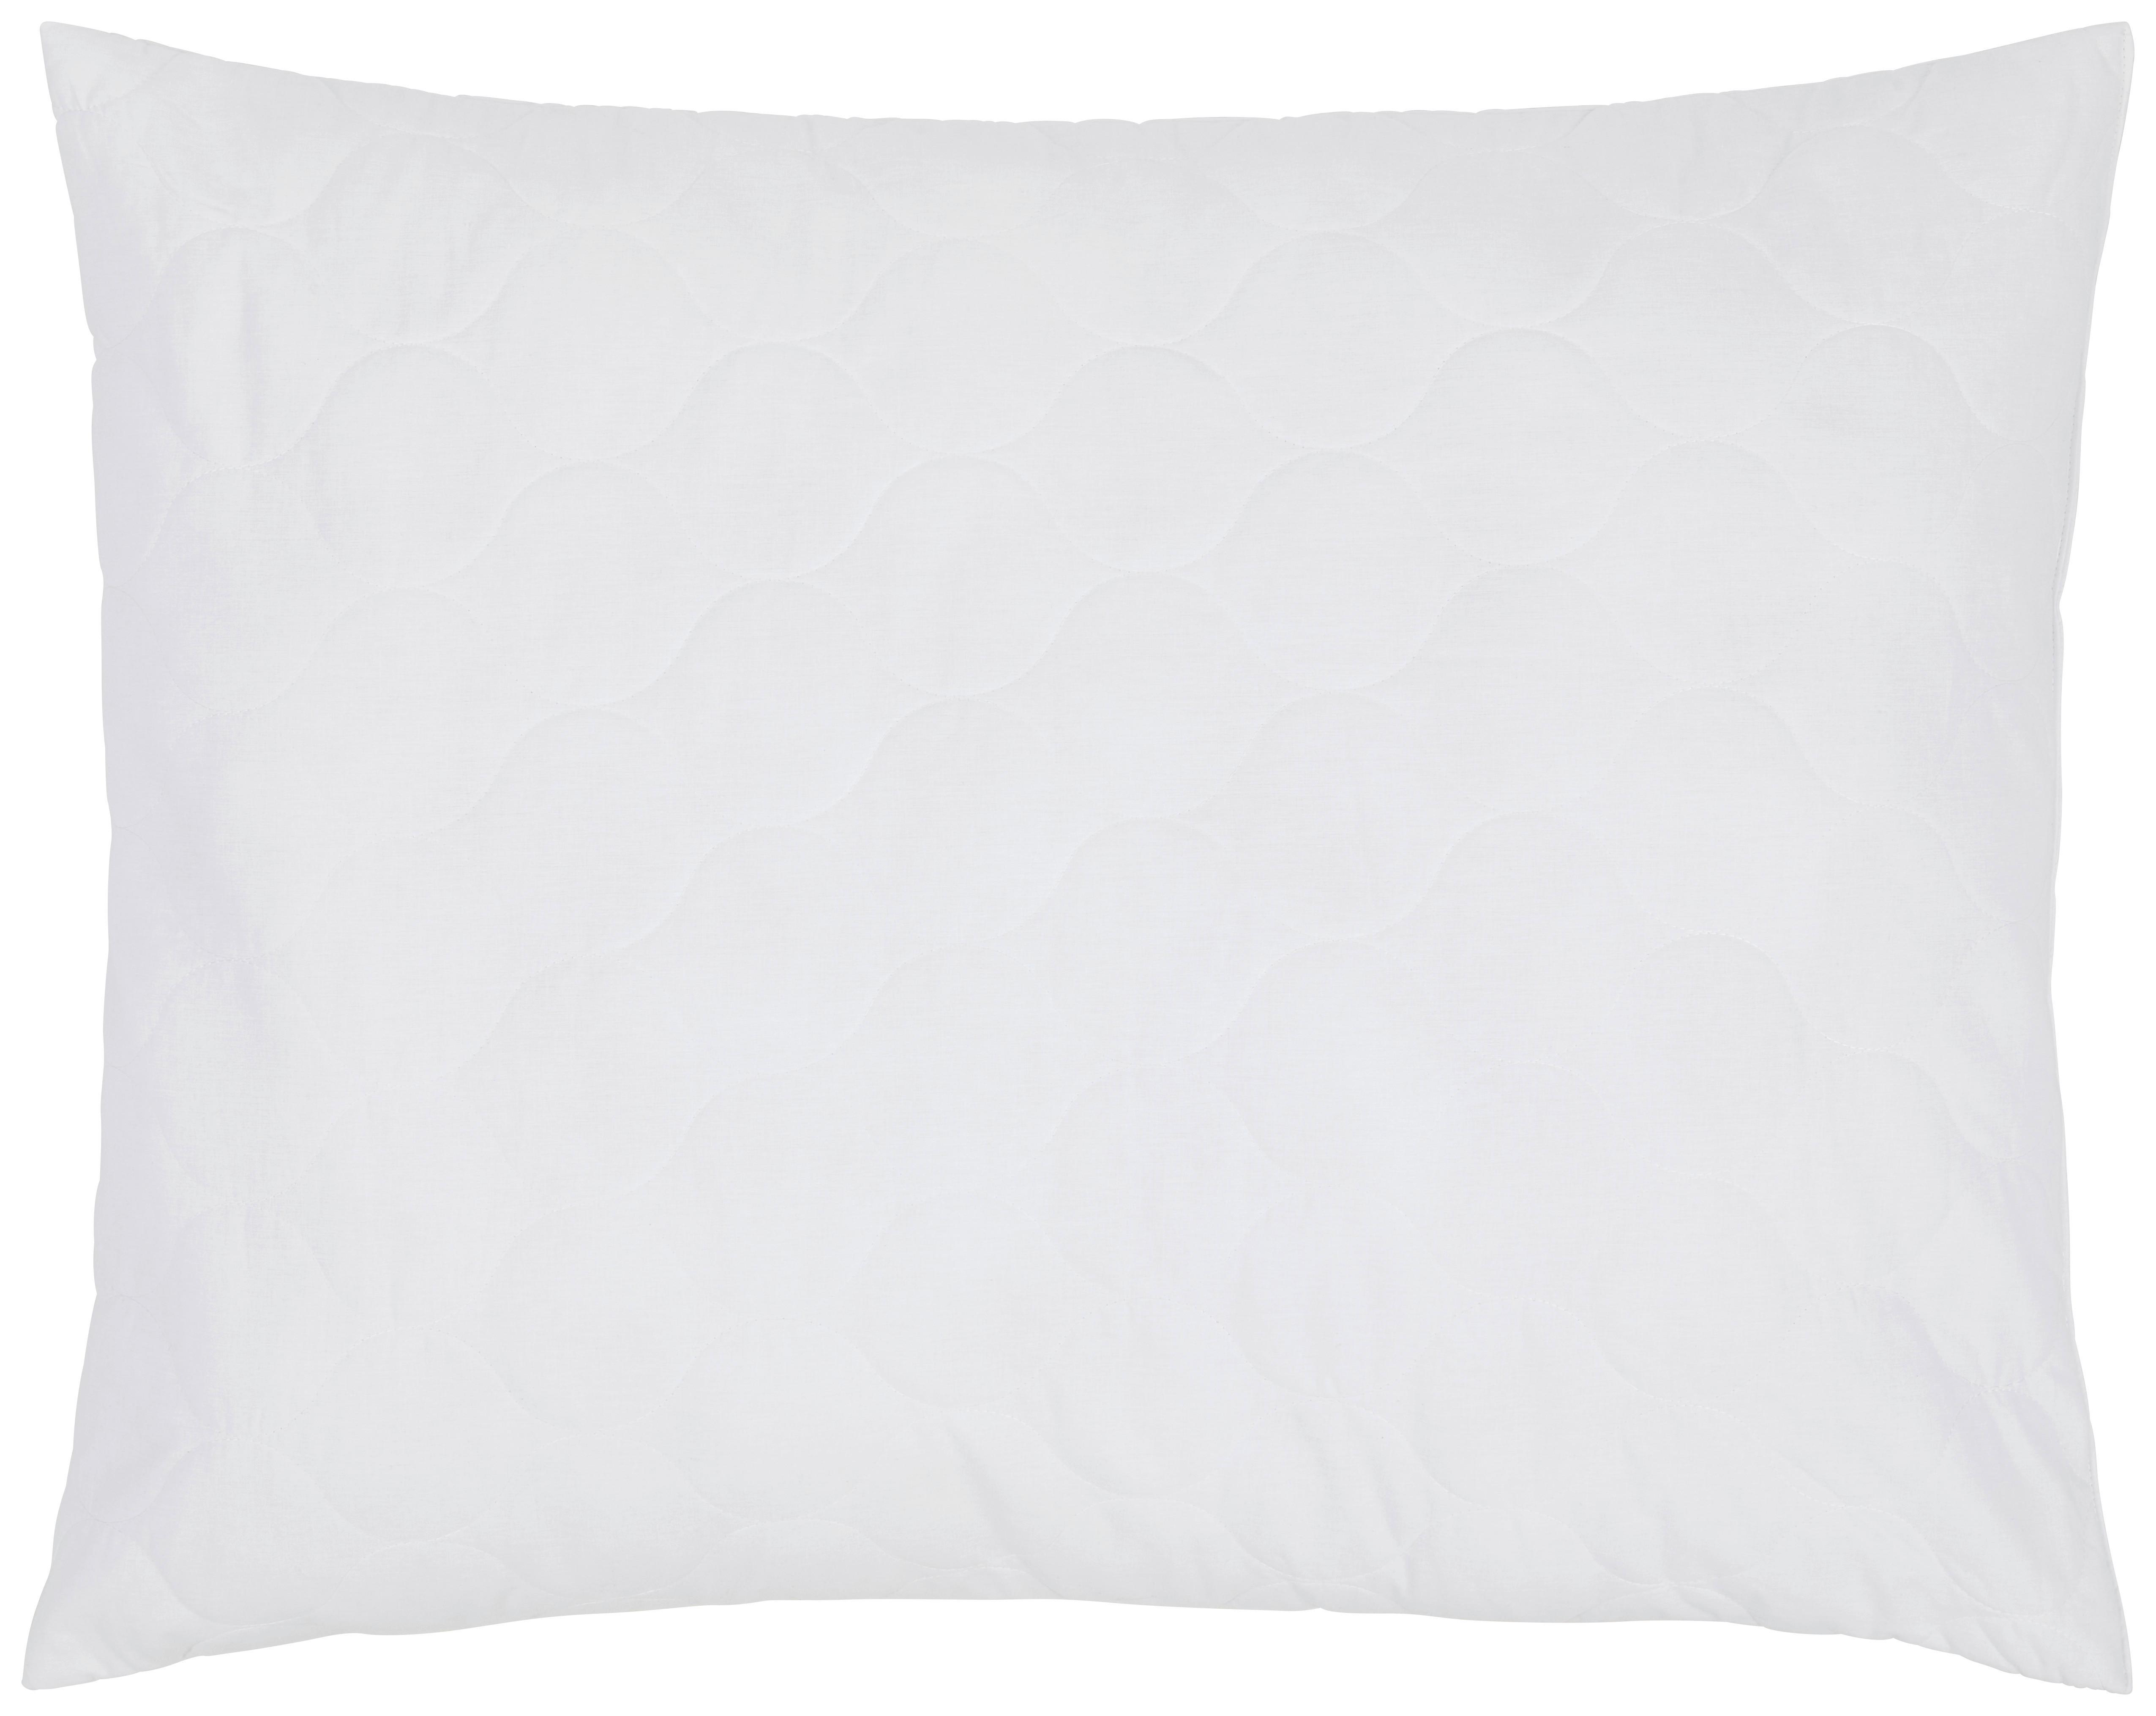 Kopfkissen Mariella 70x90 cm Polyester - Weiß, KONVENTIONELL, Textil (70/90cm) - Ele